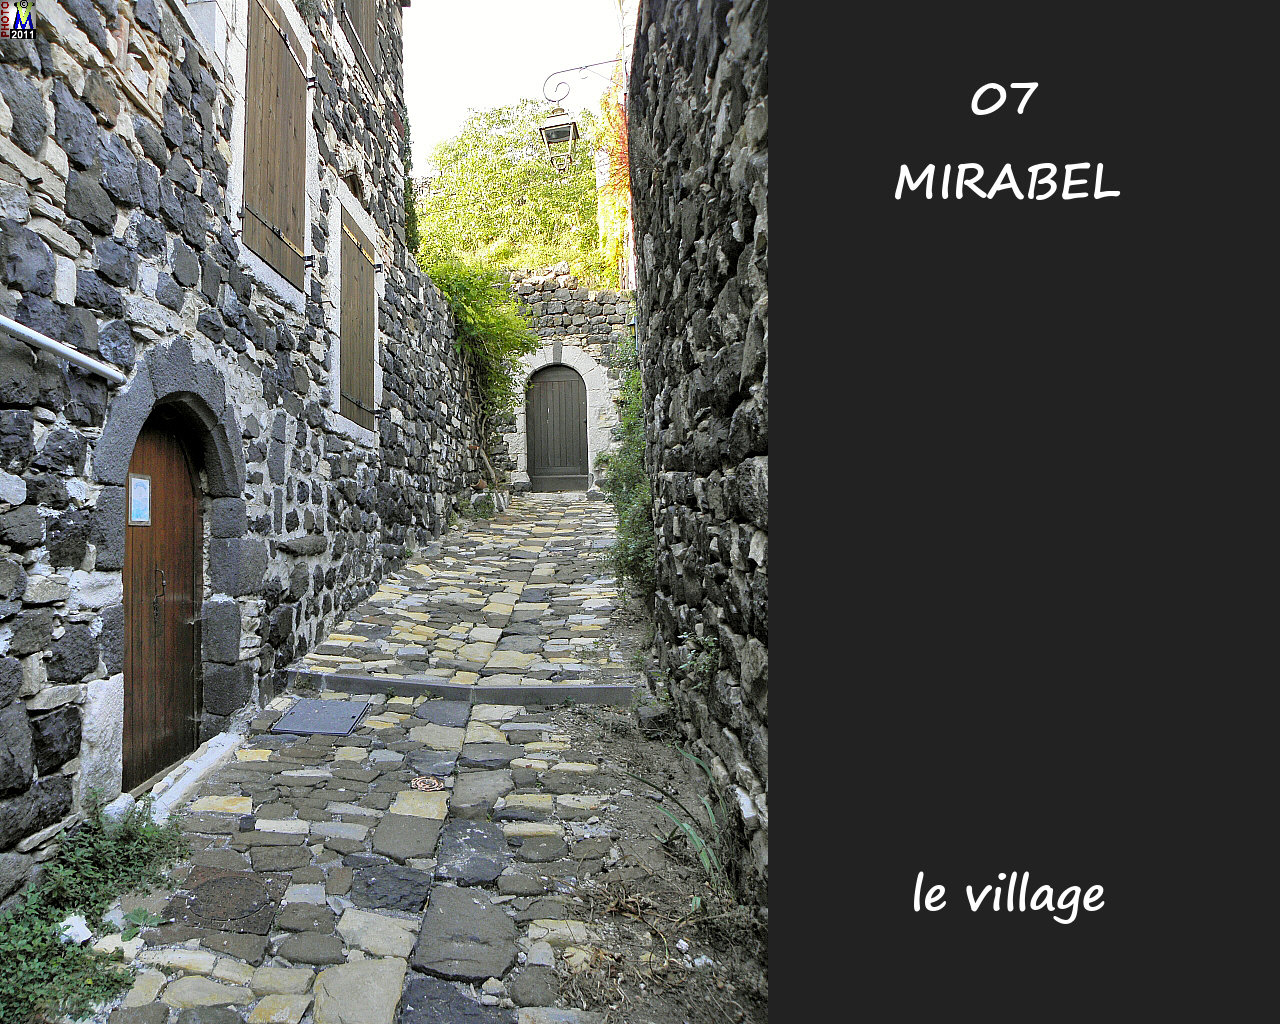 07MIRABEL_village_140.jpg